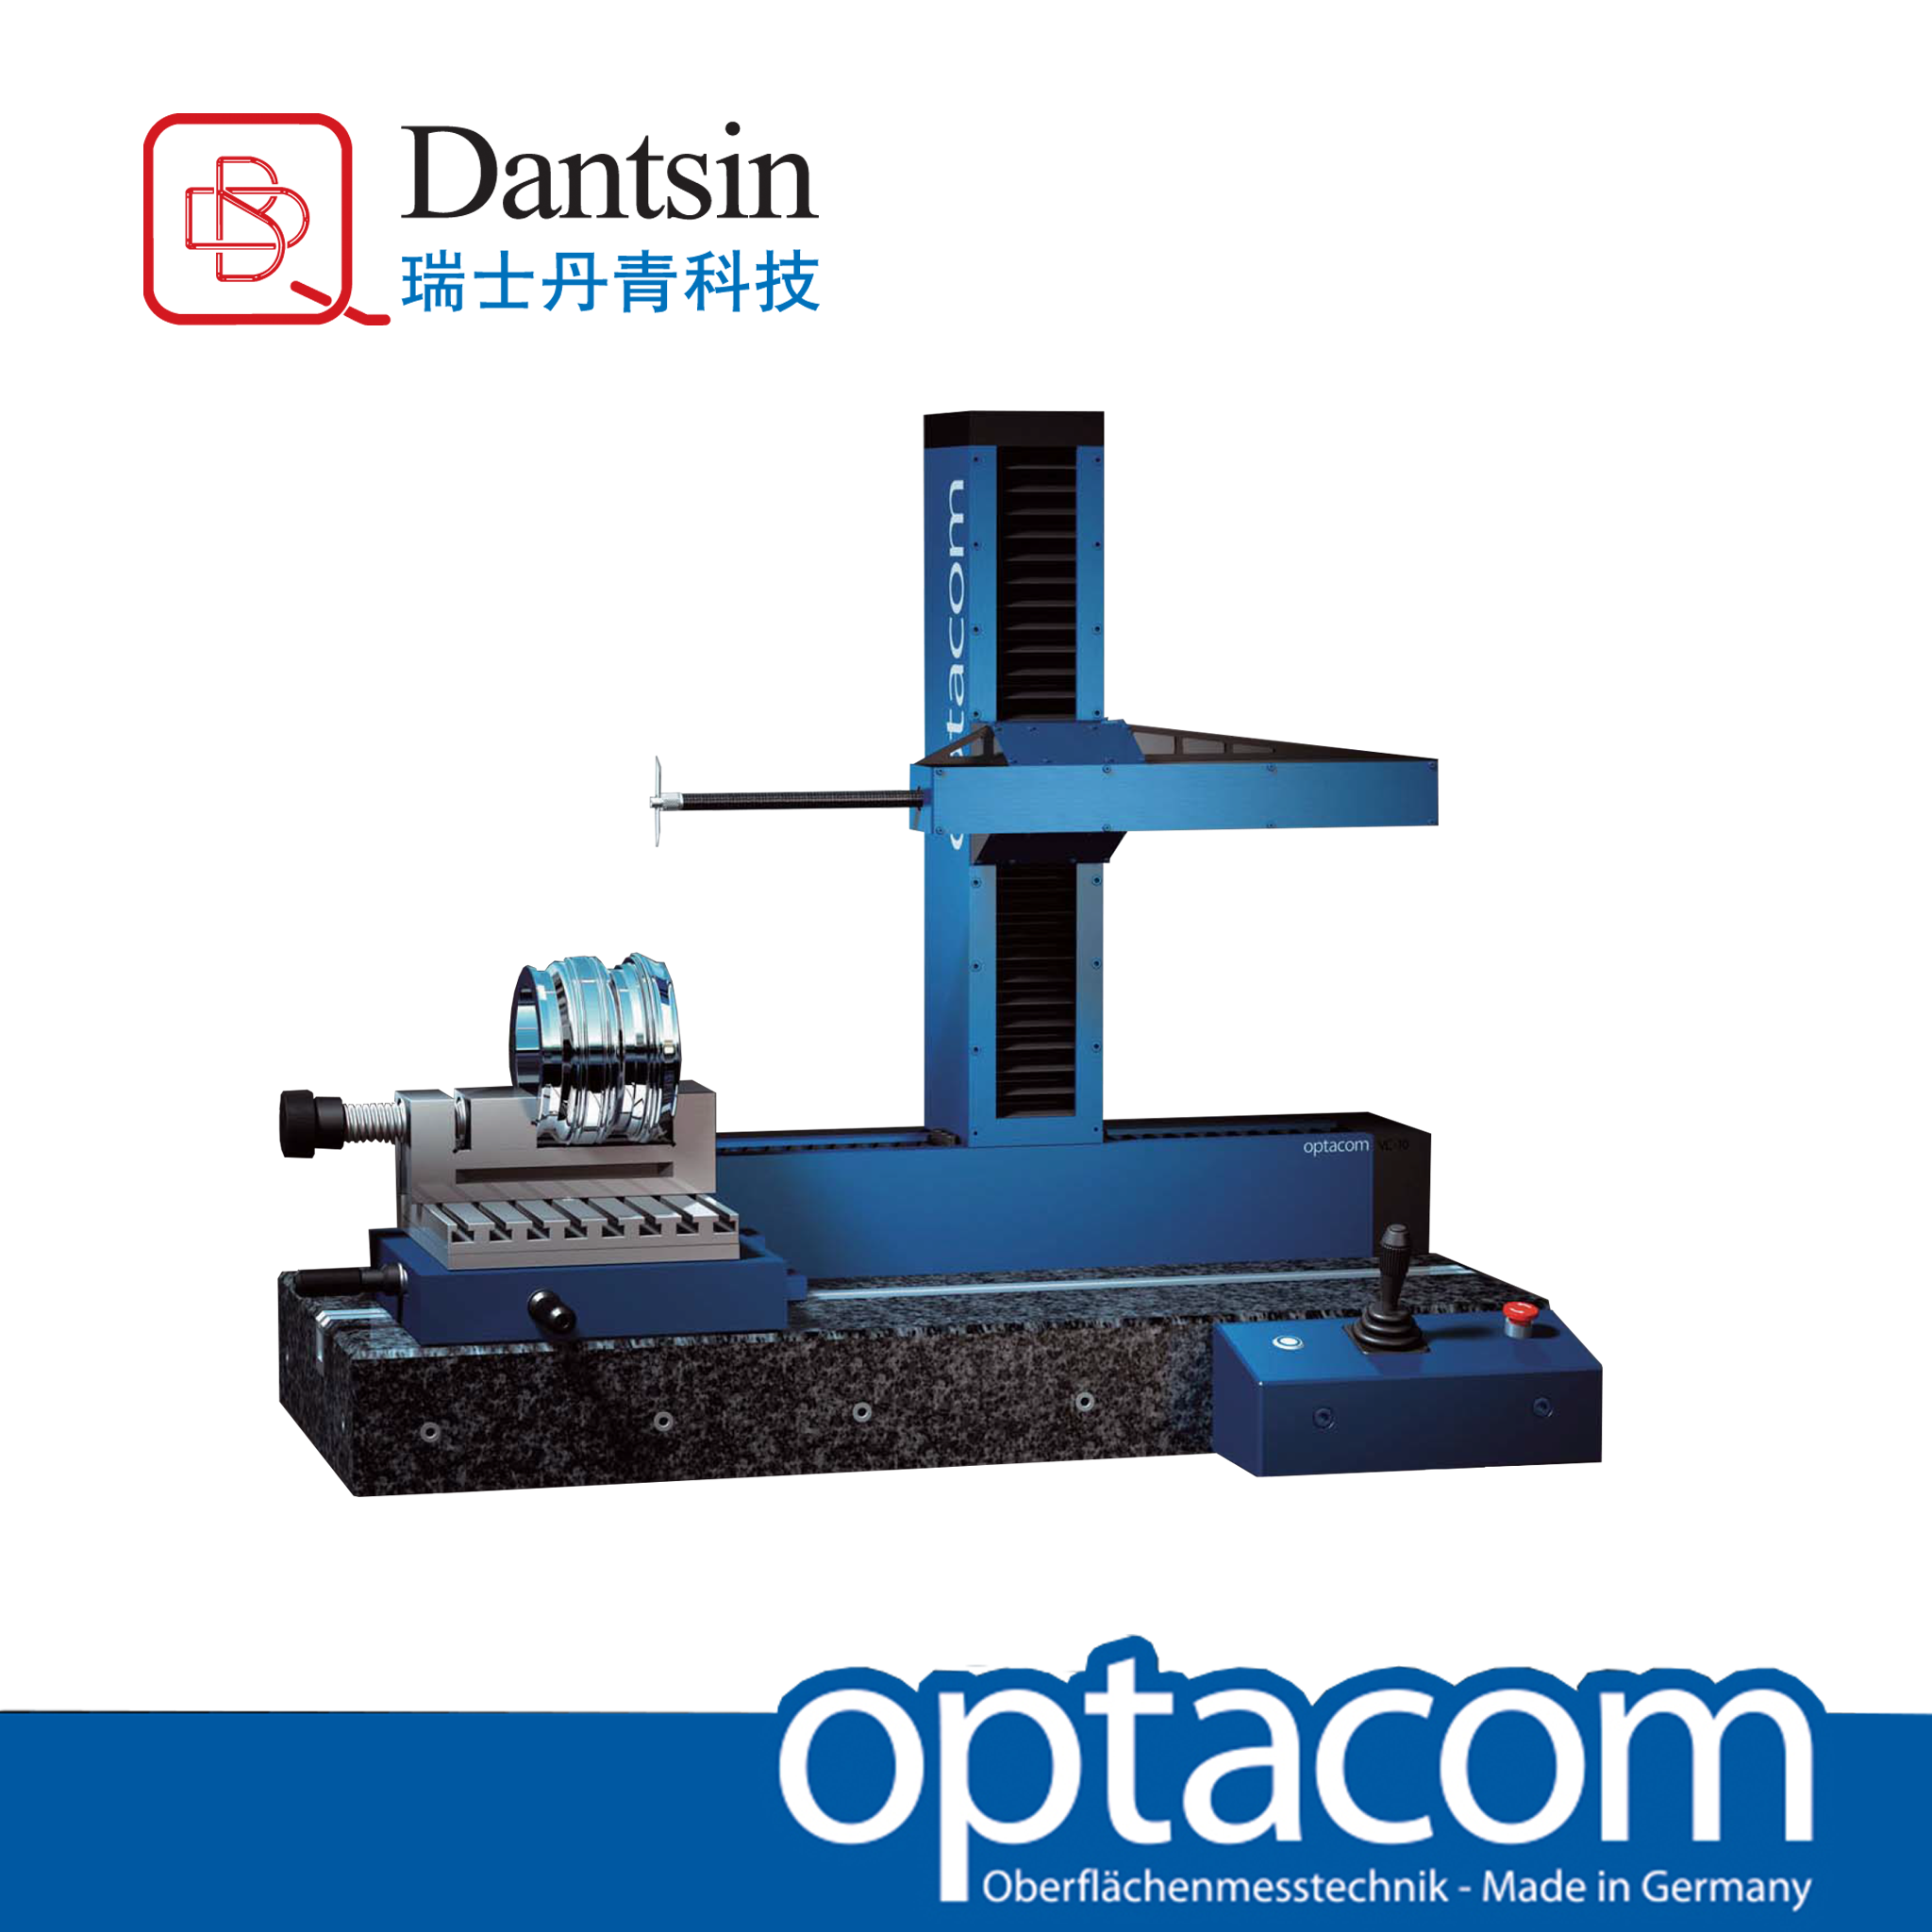 瑞士丹青高精度VC/LC系列轮廓粗糙度测量仪 测量粗糙面 瑞士进口国产